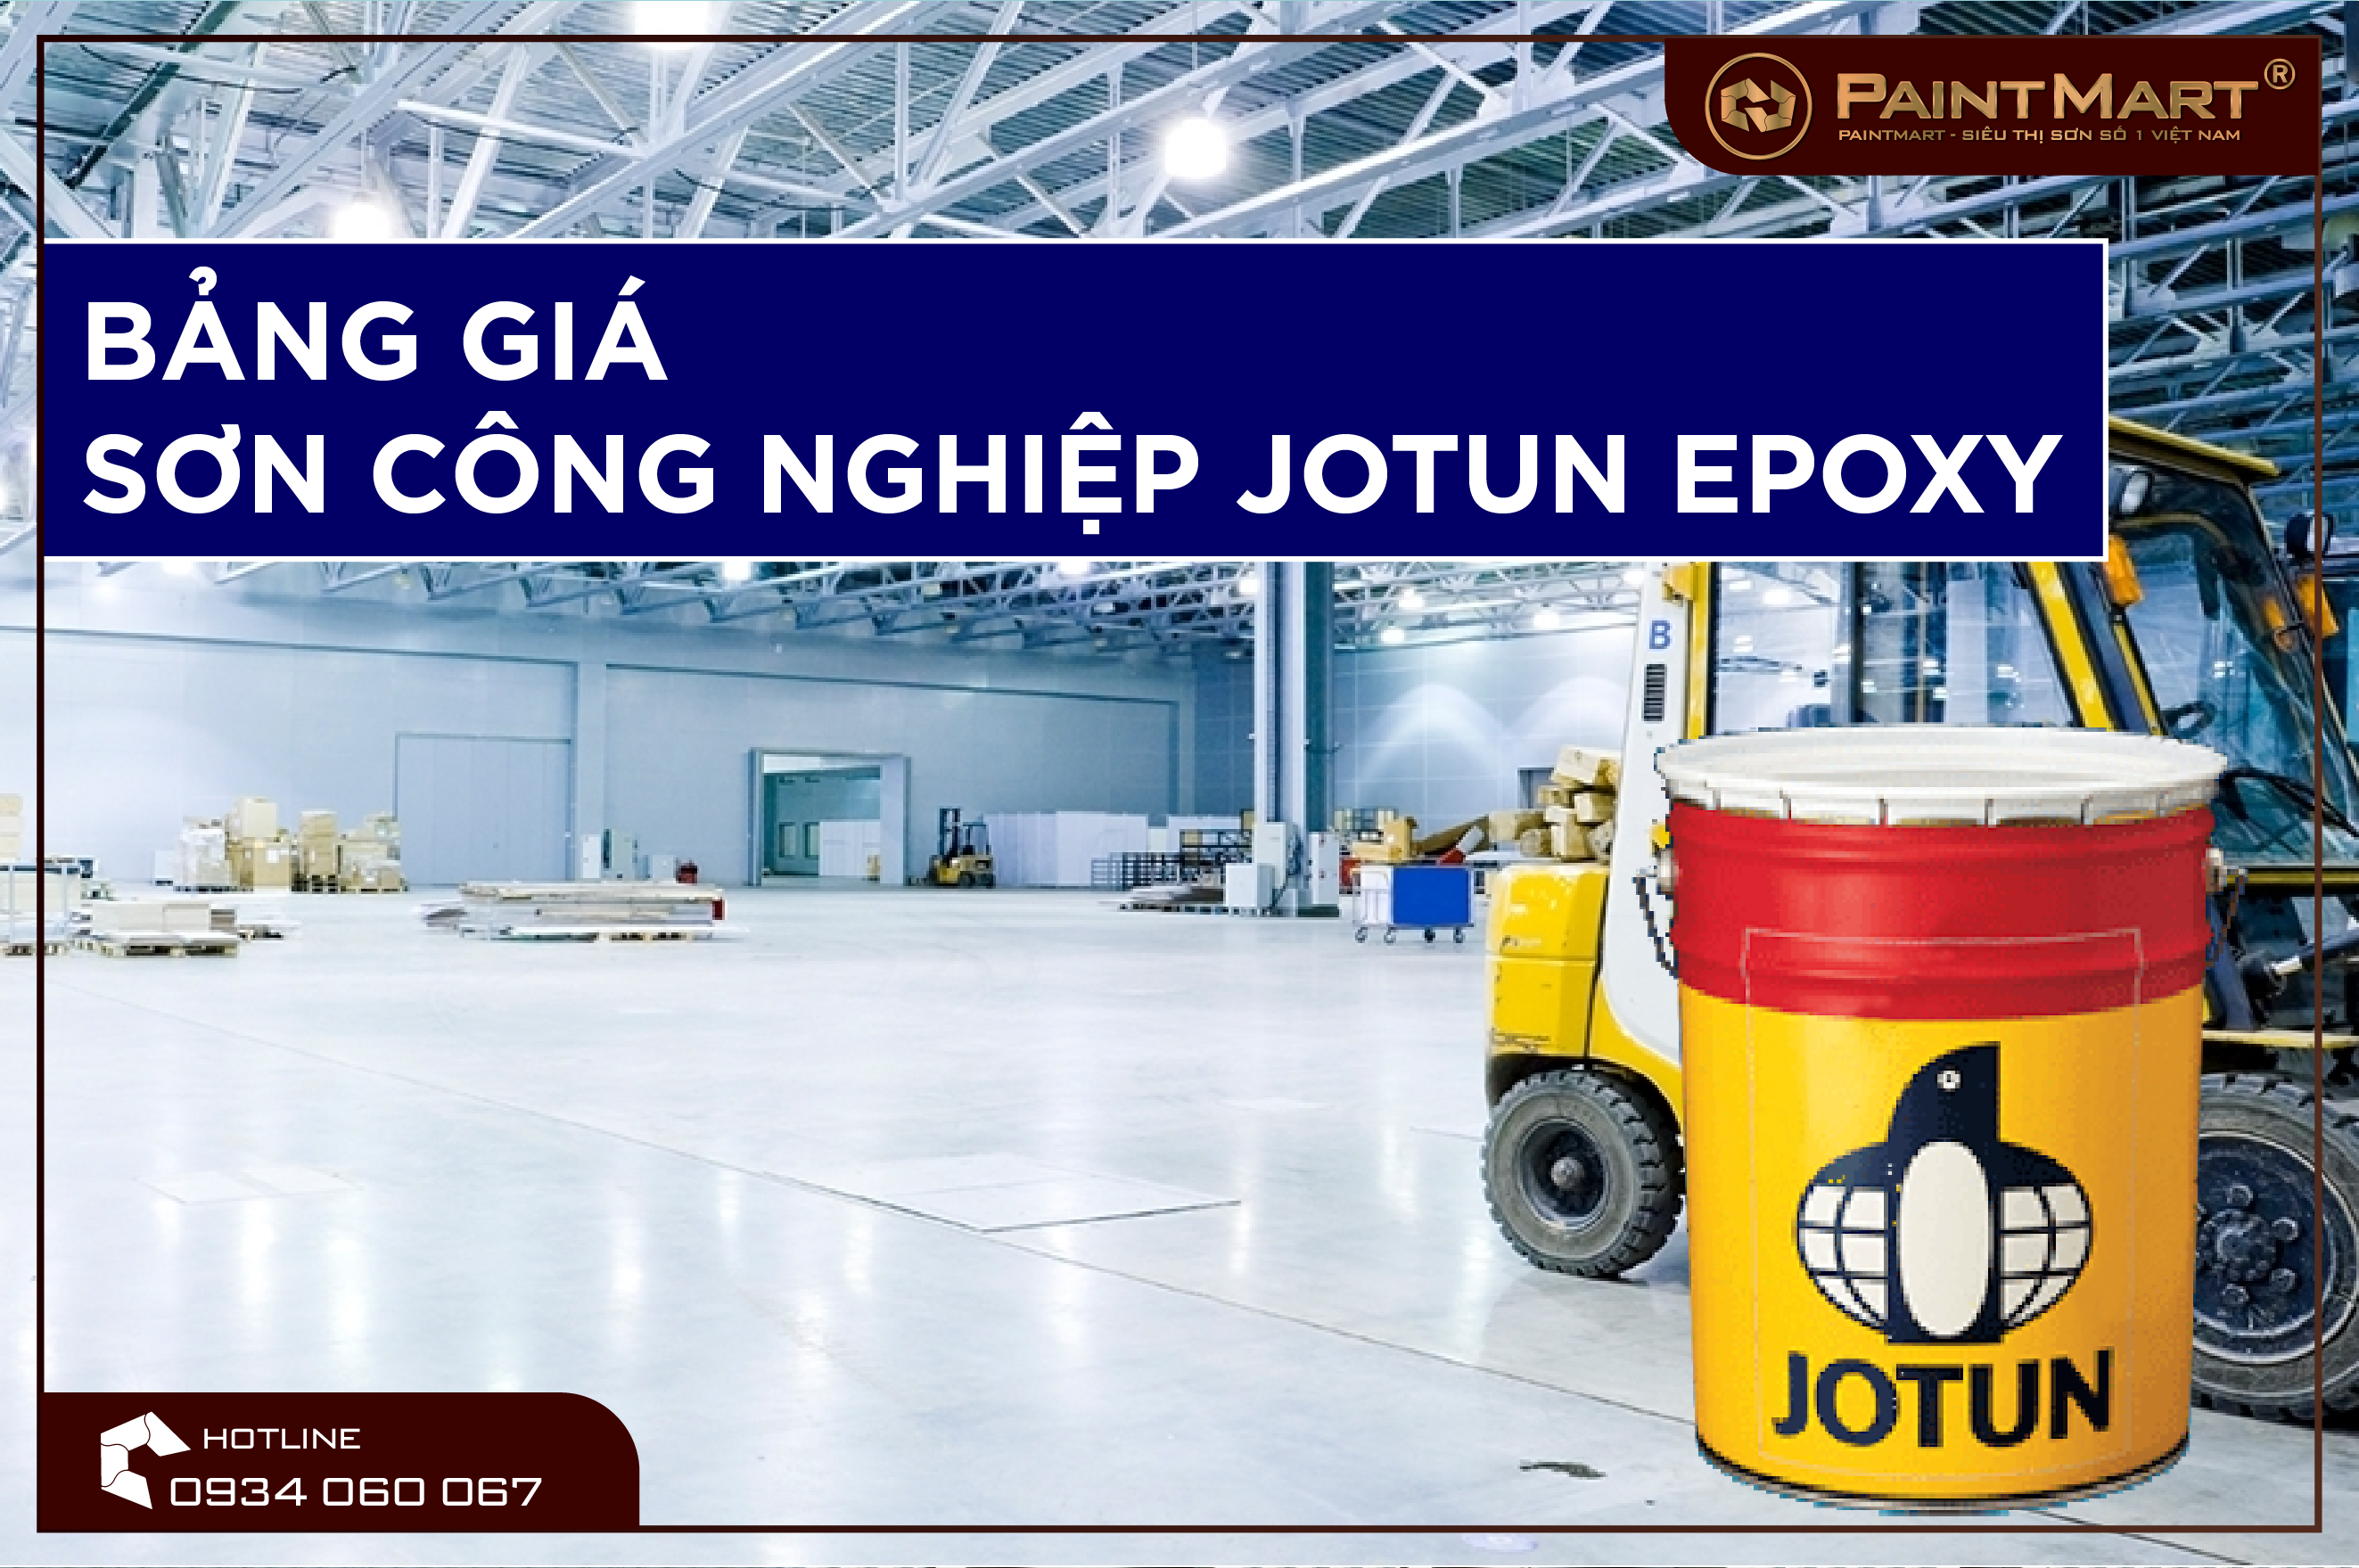 Với sơn công nghiệp Jotun Epoxy, bạn sẽ có được bề mặt bền vững, chống chịu mọi tác động, từ hóa chất đến ánh nắng mặt trời. Hãy xem hình ảnh để thấy sự khác biệt mà sơn Jotun Epoxy mang đến cho sản phẩm của bạn.